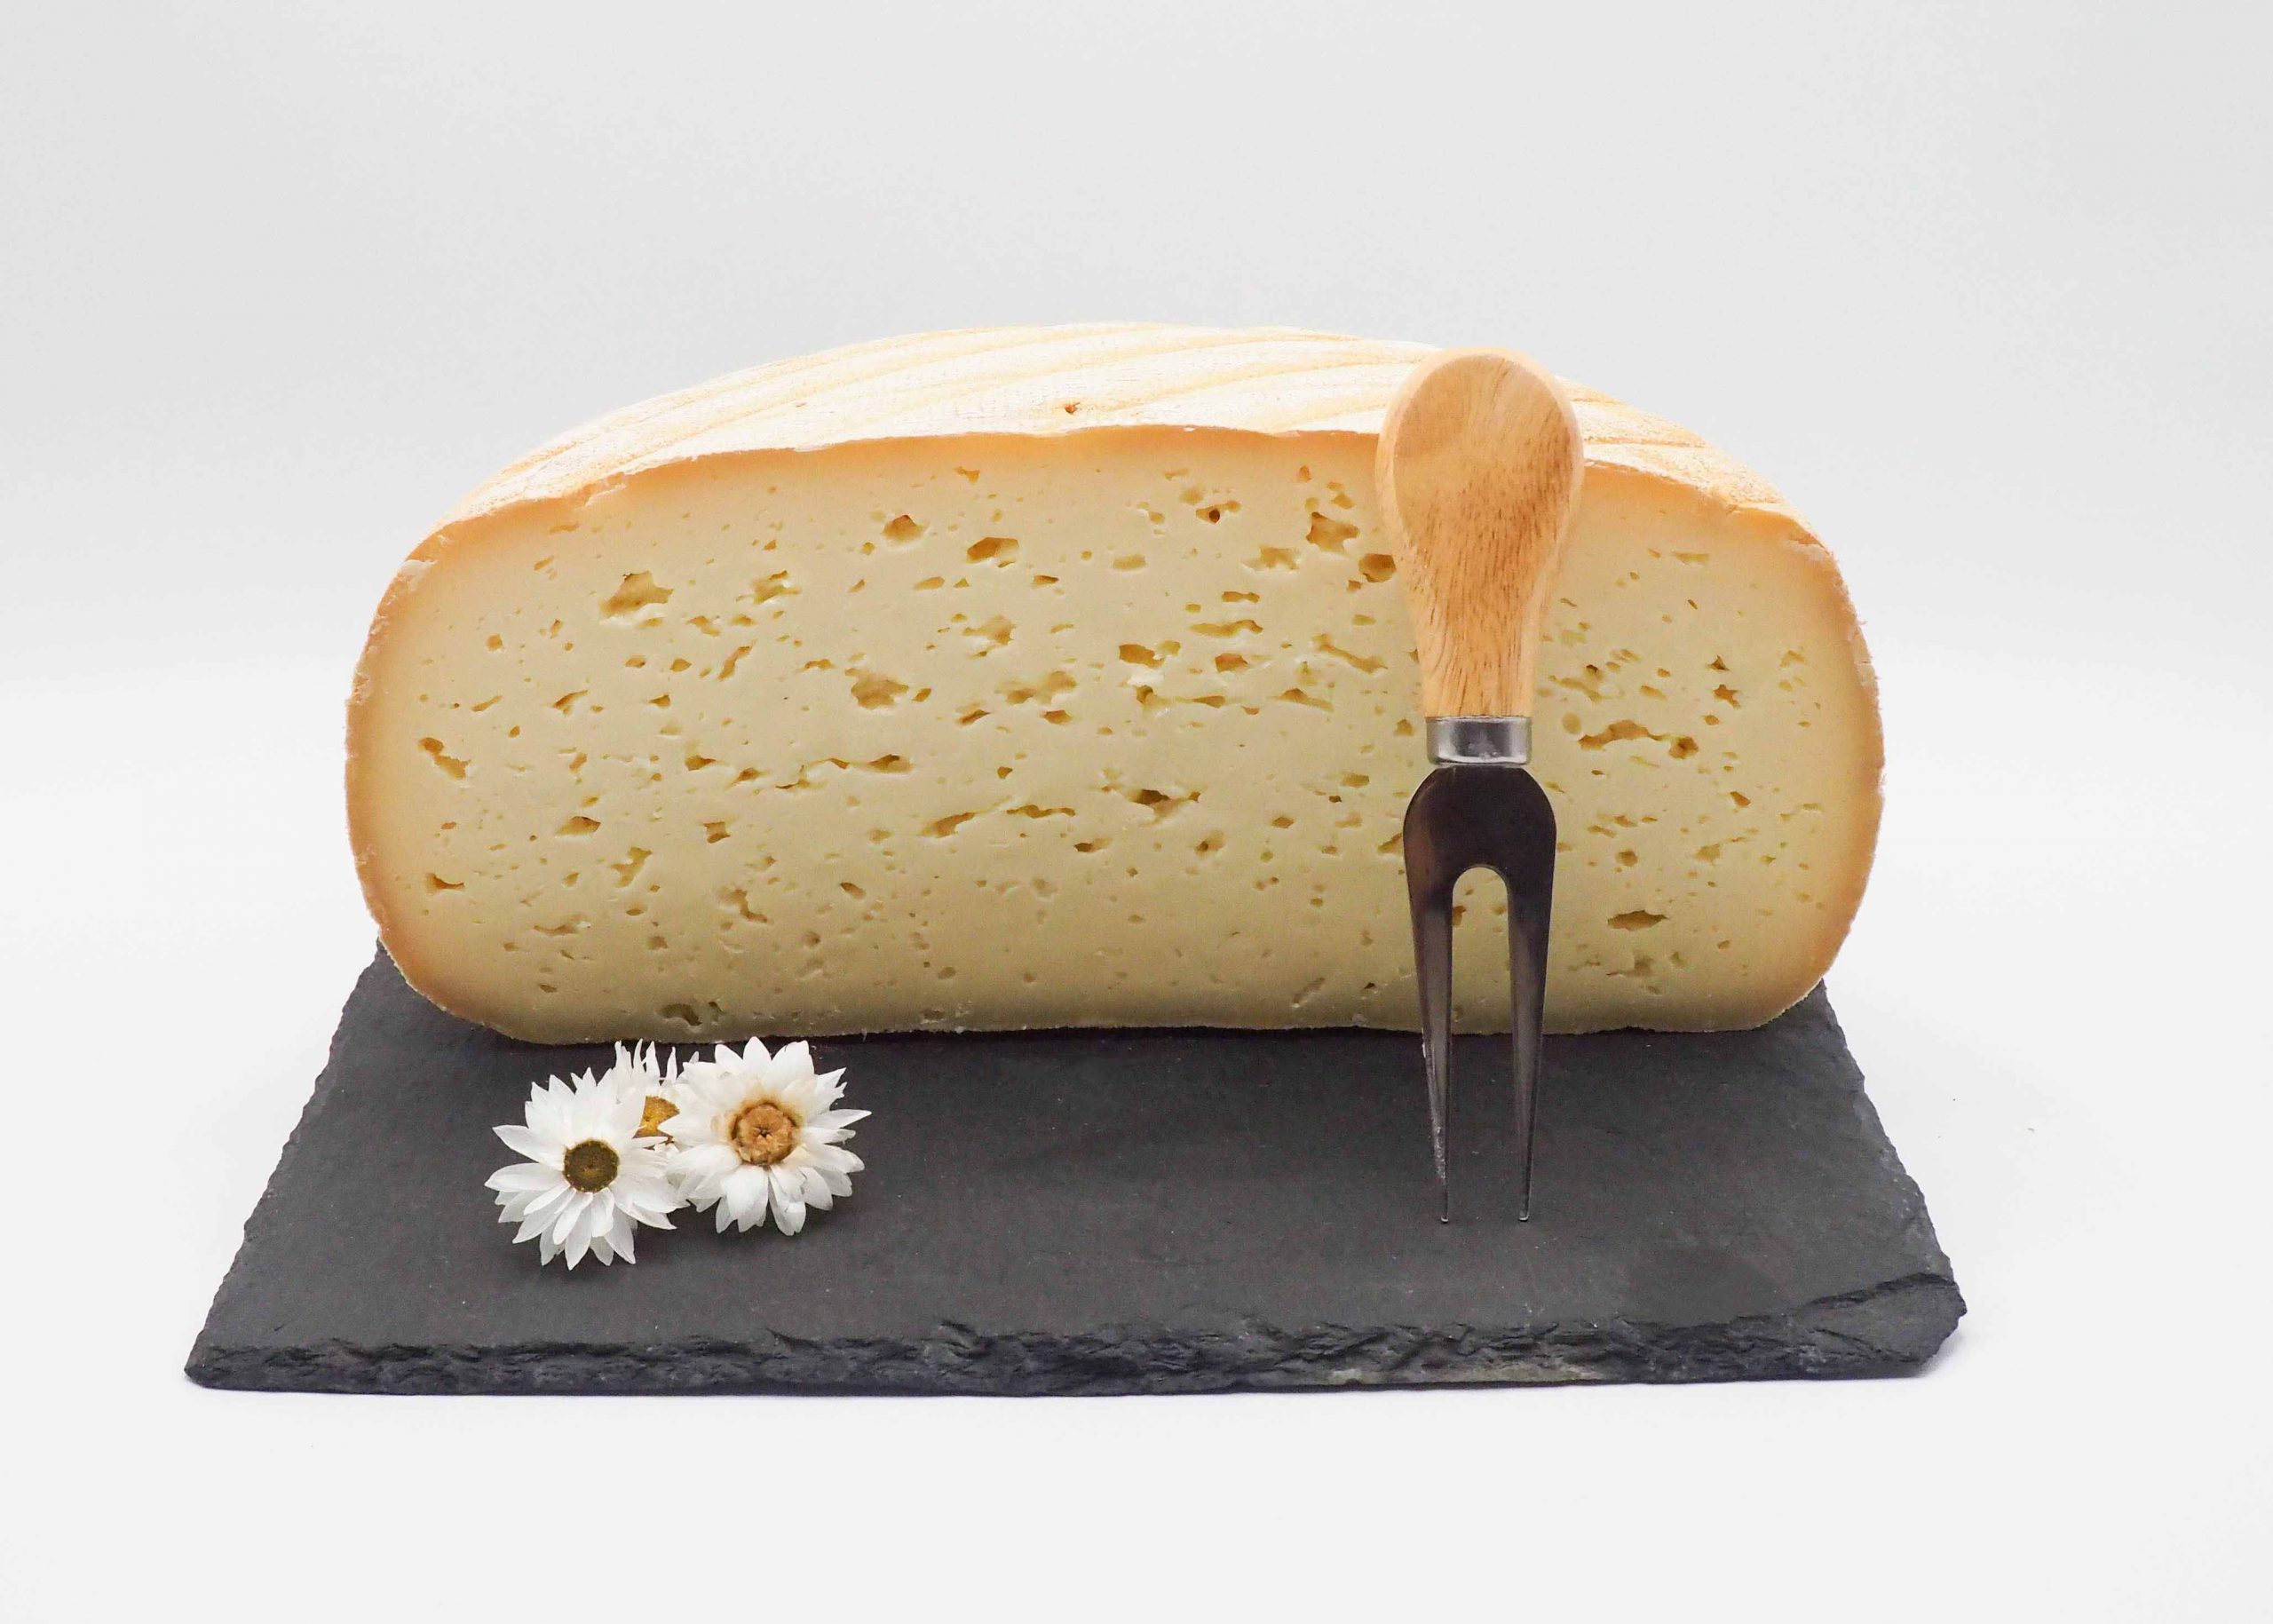 Achetez en ligne du fromage chez Fromage Napoléon. Livraison à domicile sur toute la France